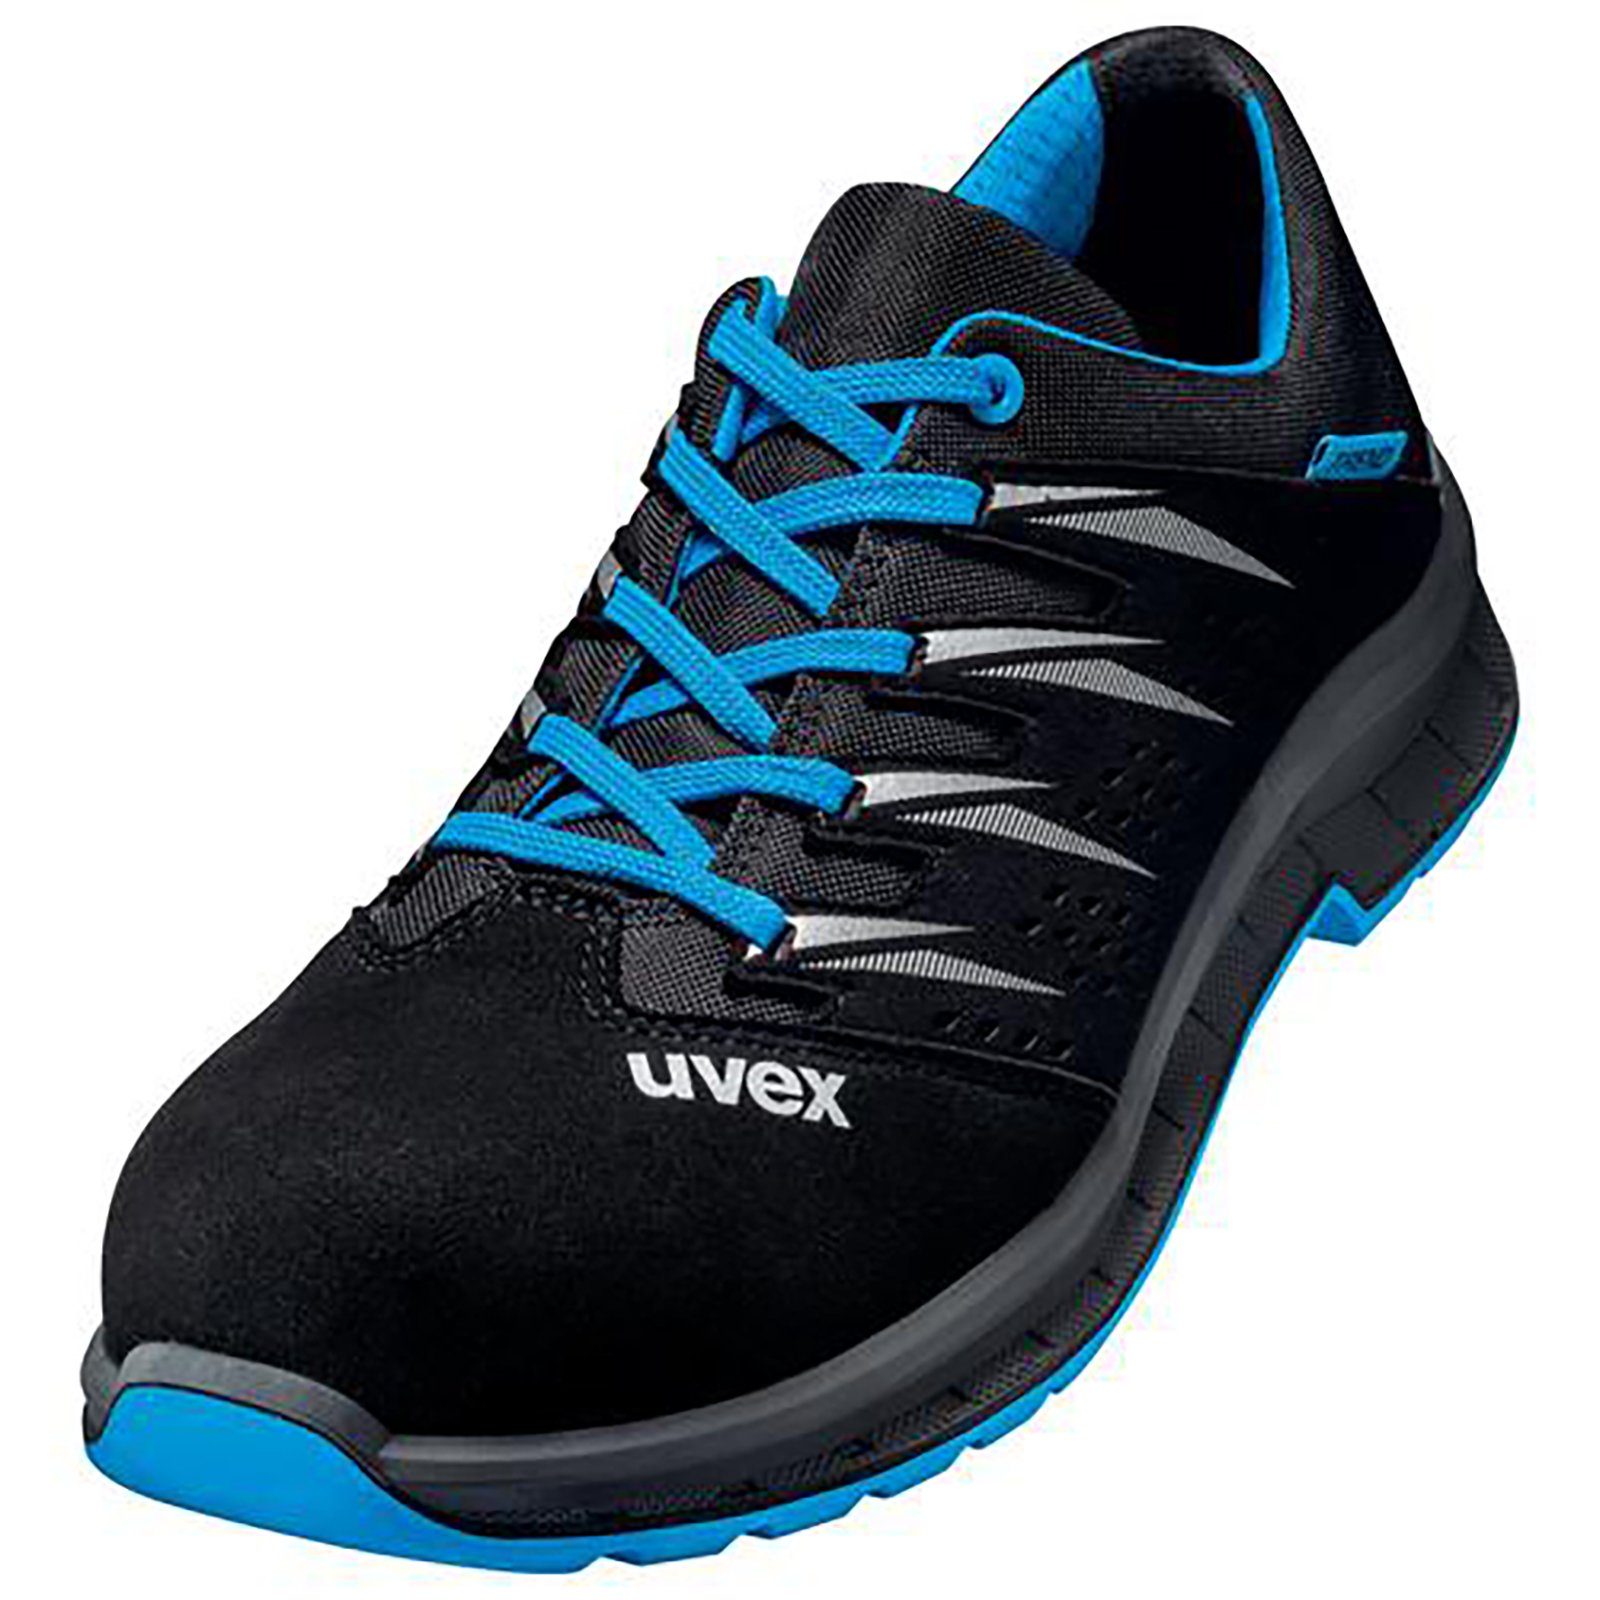 Uvex 2 trend Halbschuhe S1 blau, schwarz Weite 10 Sicherheitsschuh | Arbeitsschuhe